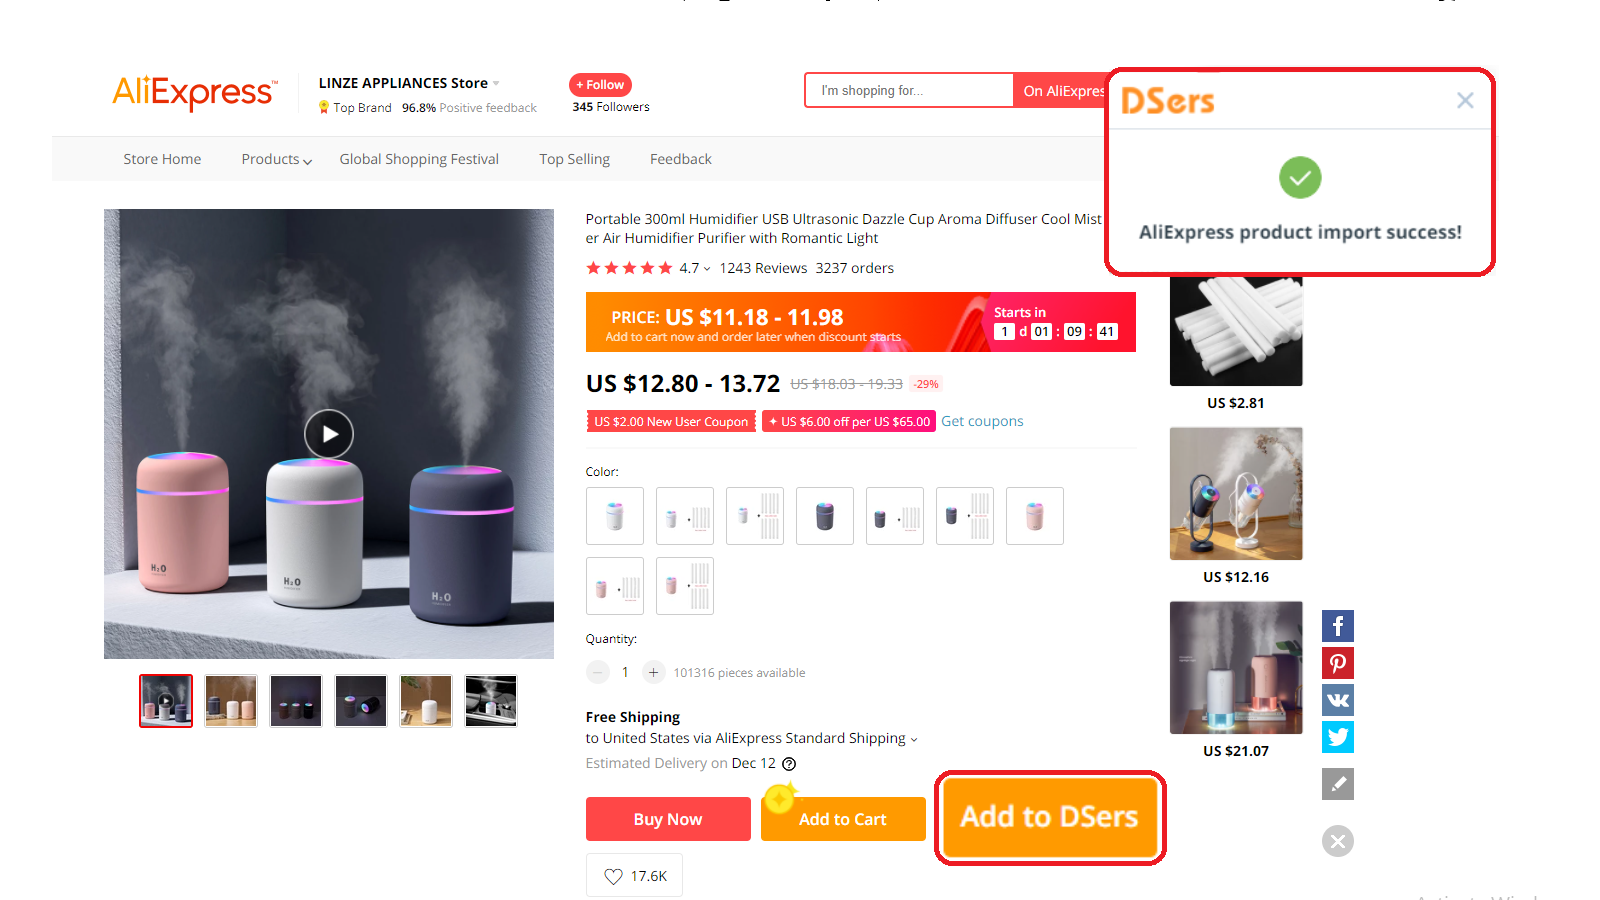 网站上售卖空气清新器的图片和价格等信息